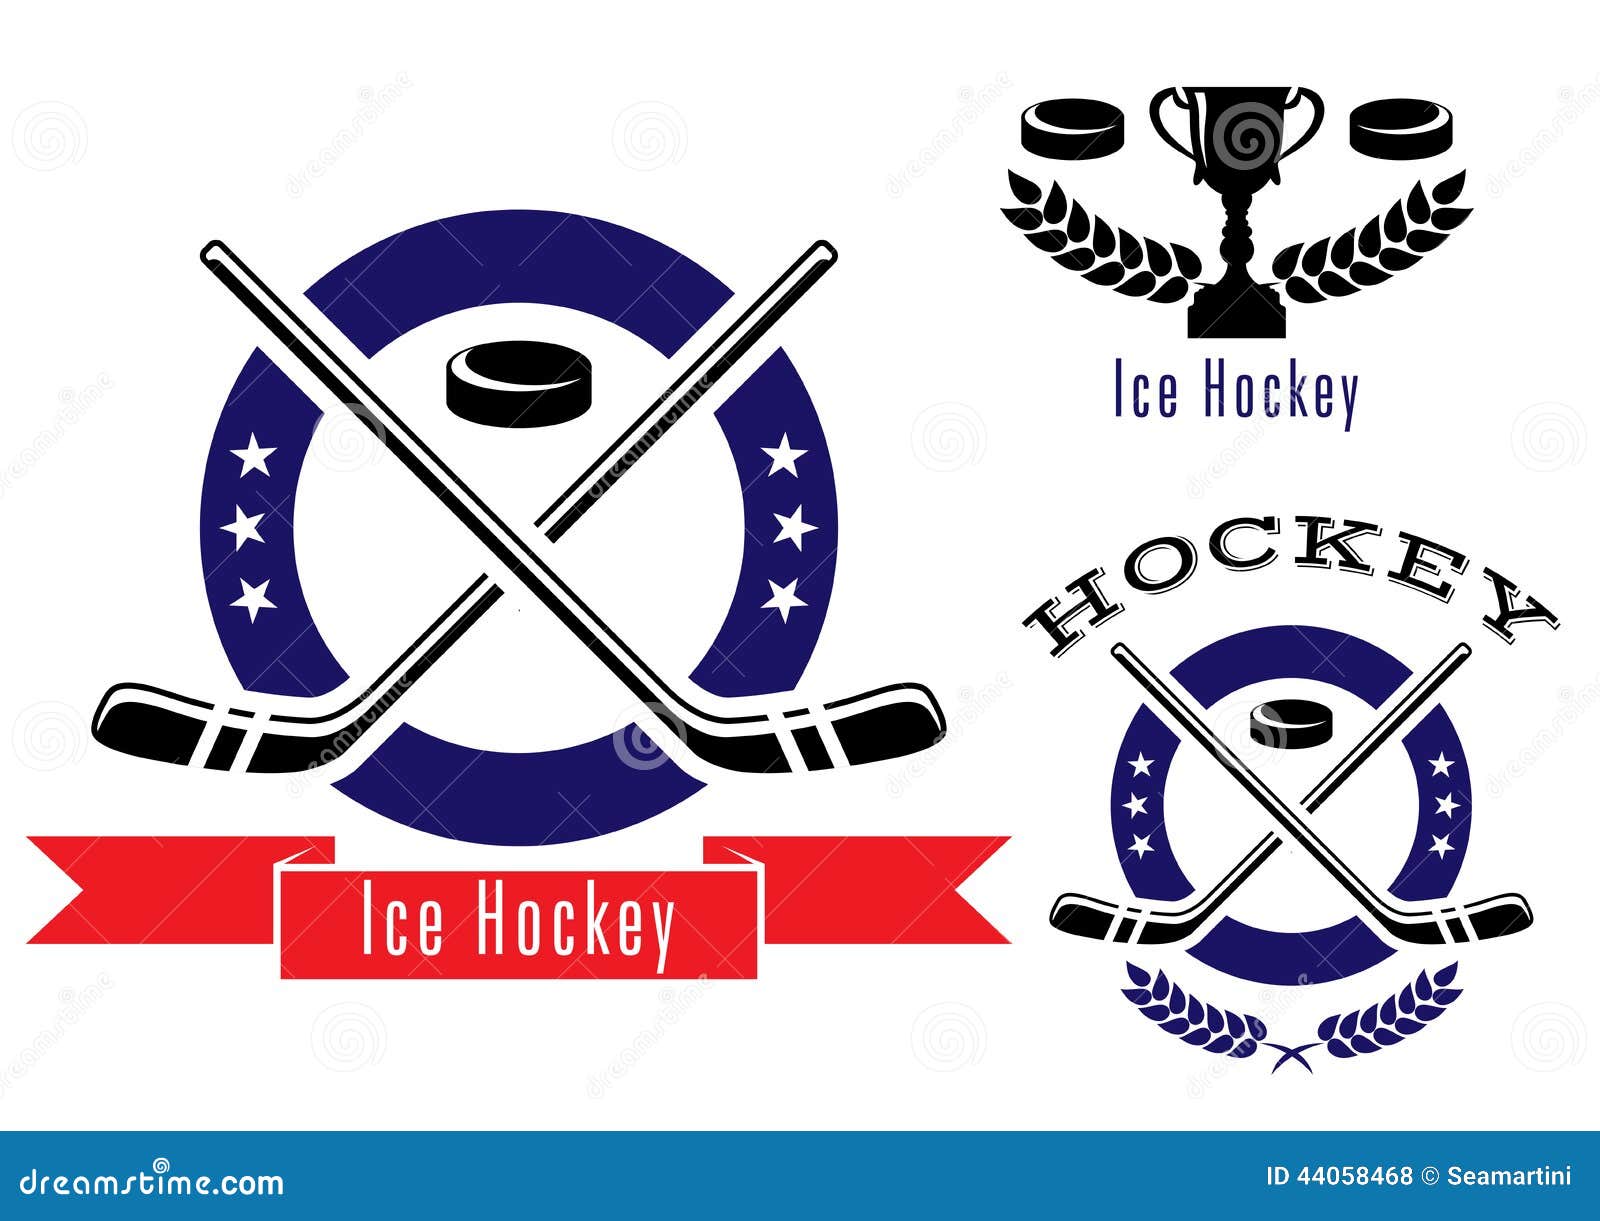 Eishockeysymbole oder -embleme eingestellt. Die Eishockeysymbole oder -logos, die mit Koboldfahnen-Stocklorbeer eingestellt werden, winden, prize Schale der Trophäe und Text Eis-Hockey Mai-Gebrauch für Sport- und Erholungs- oder Logodesign